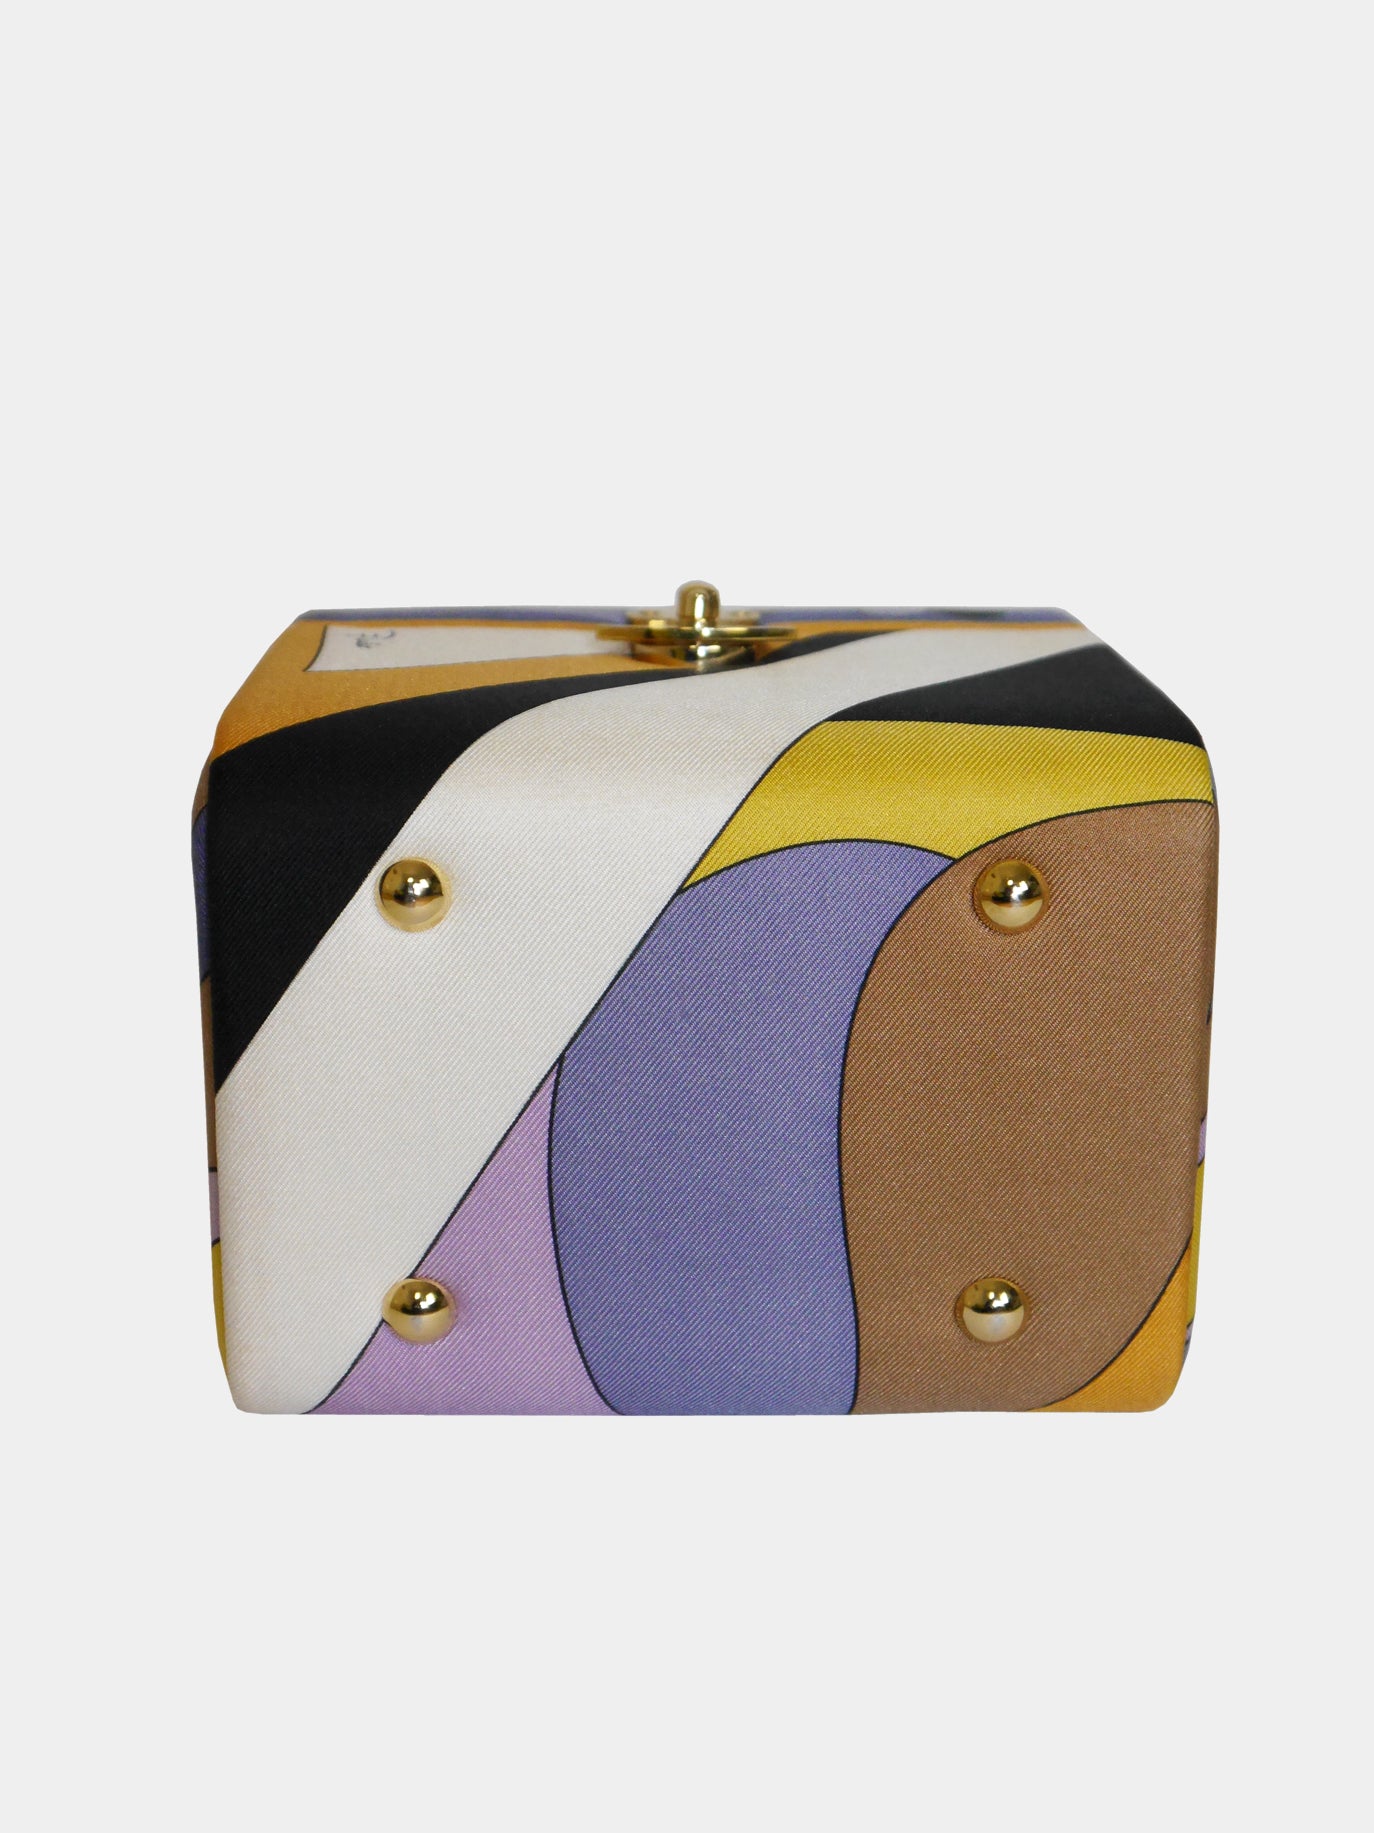 EMILIO PUCCI Documented Fiocchetti Hard Case Box Handbag